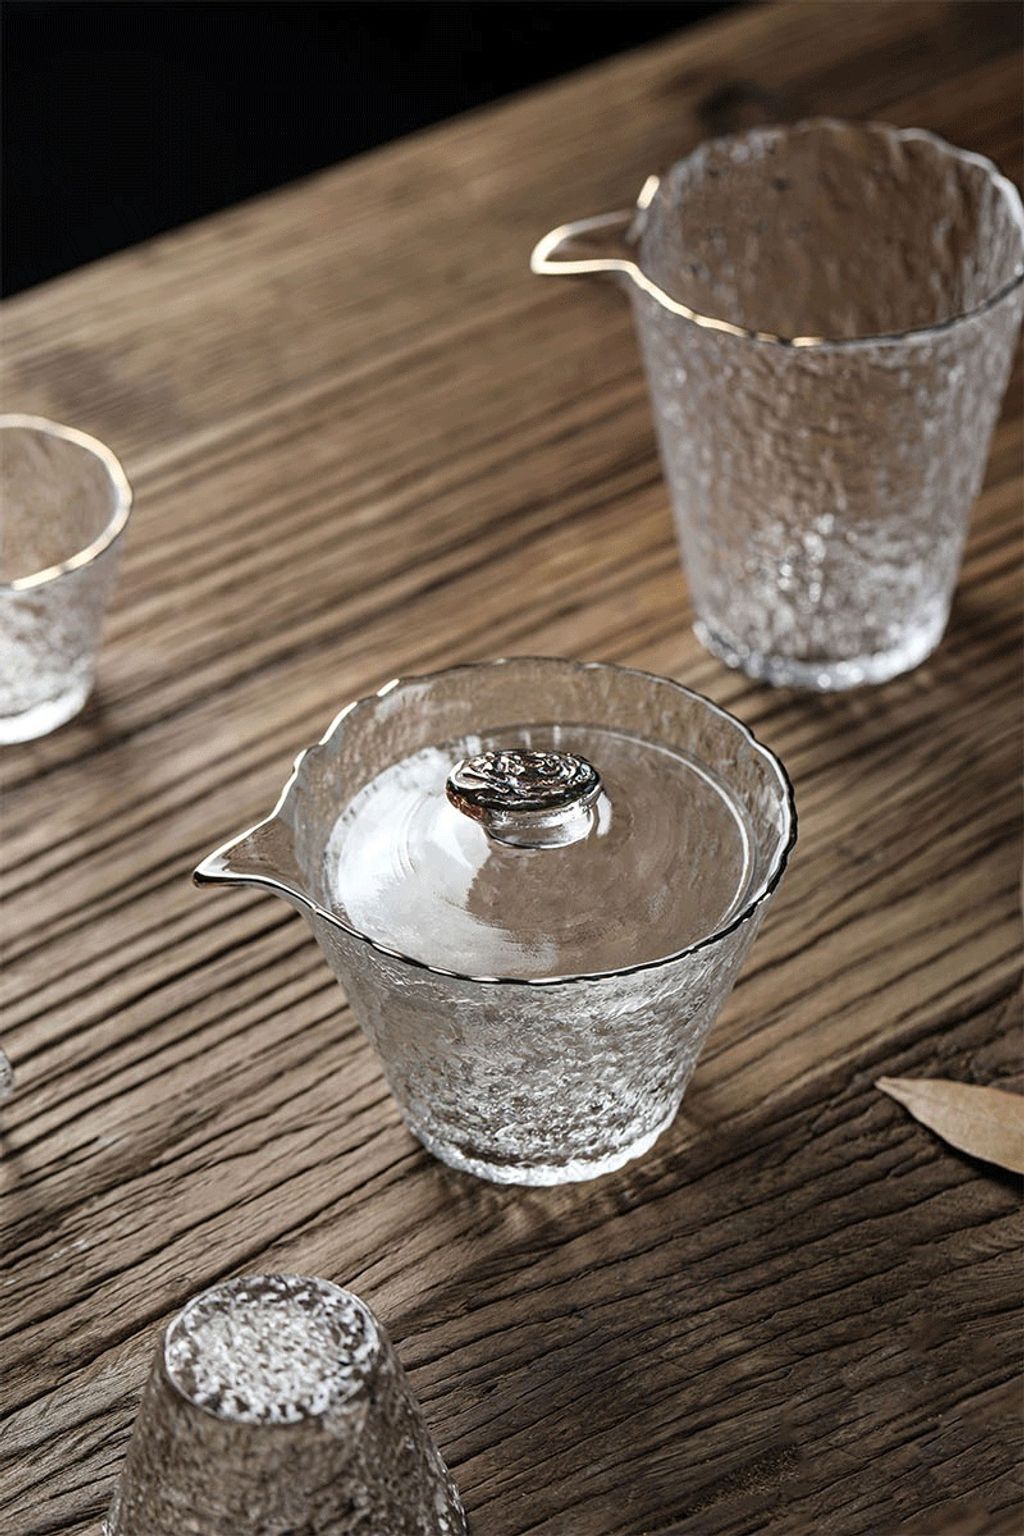 冰露玻璃蓋碗茶具組3-1.jpg